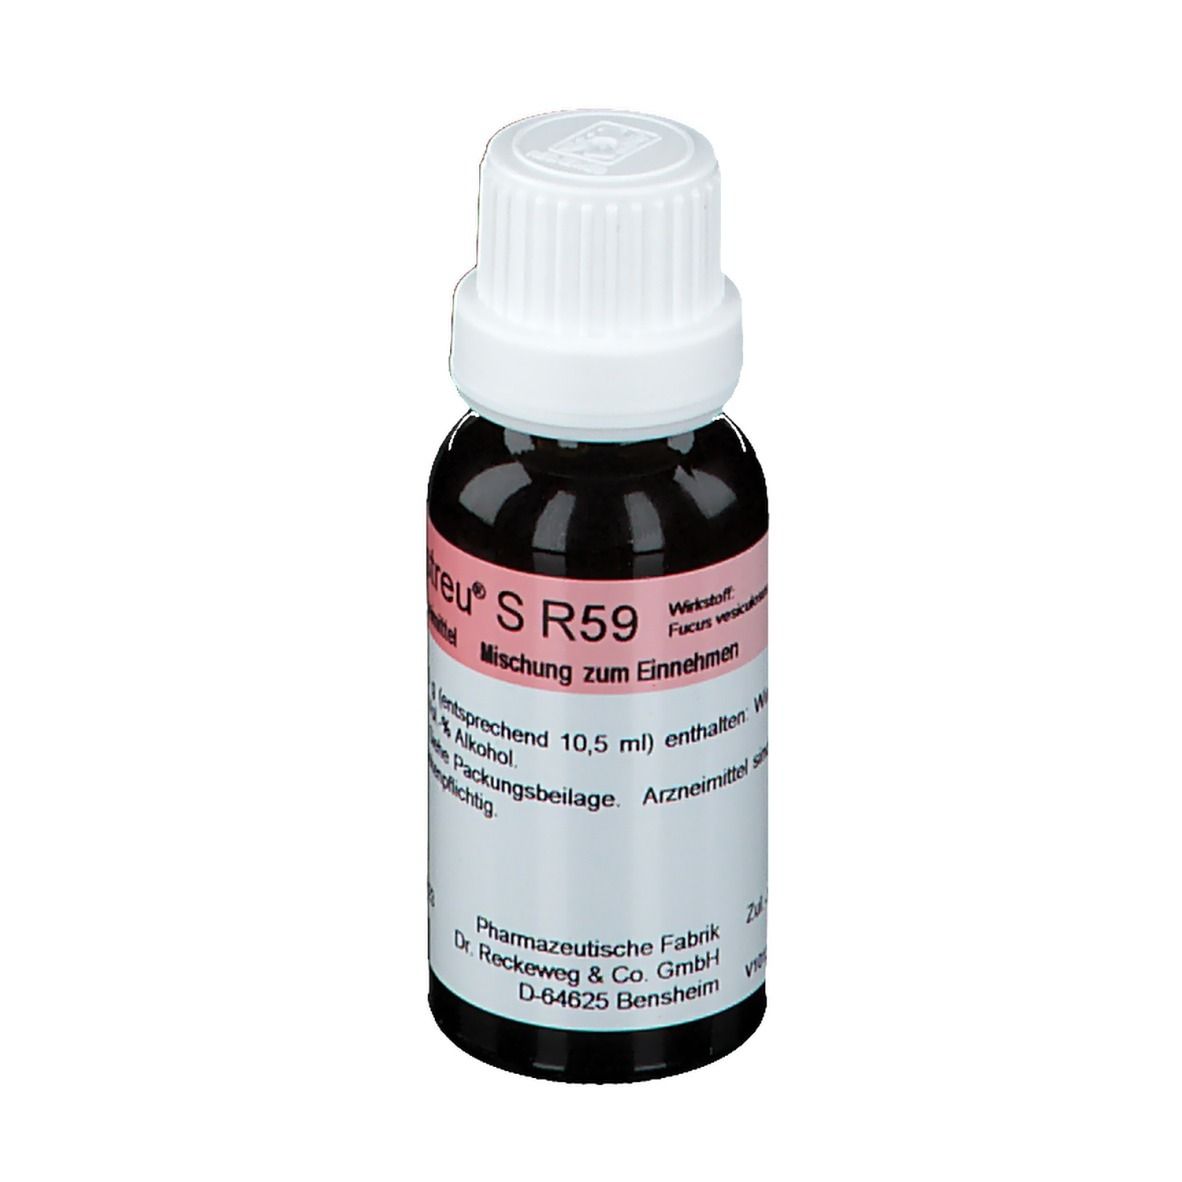 Fucus-Gastreu® S R59 Tropfen